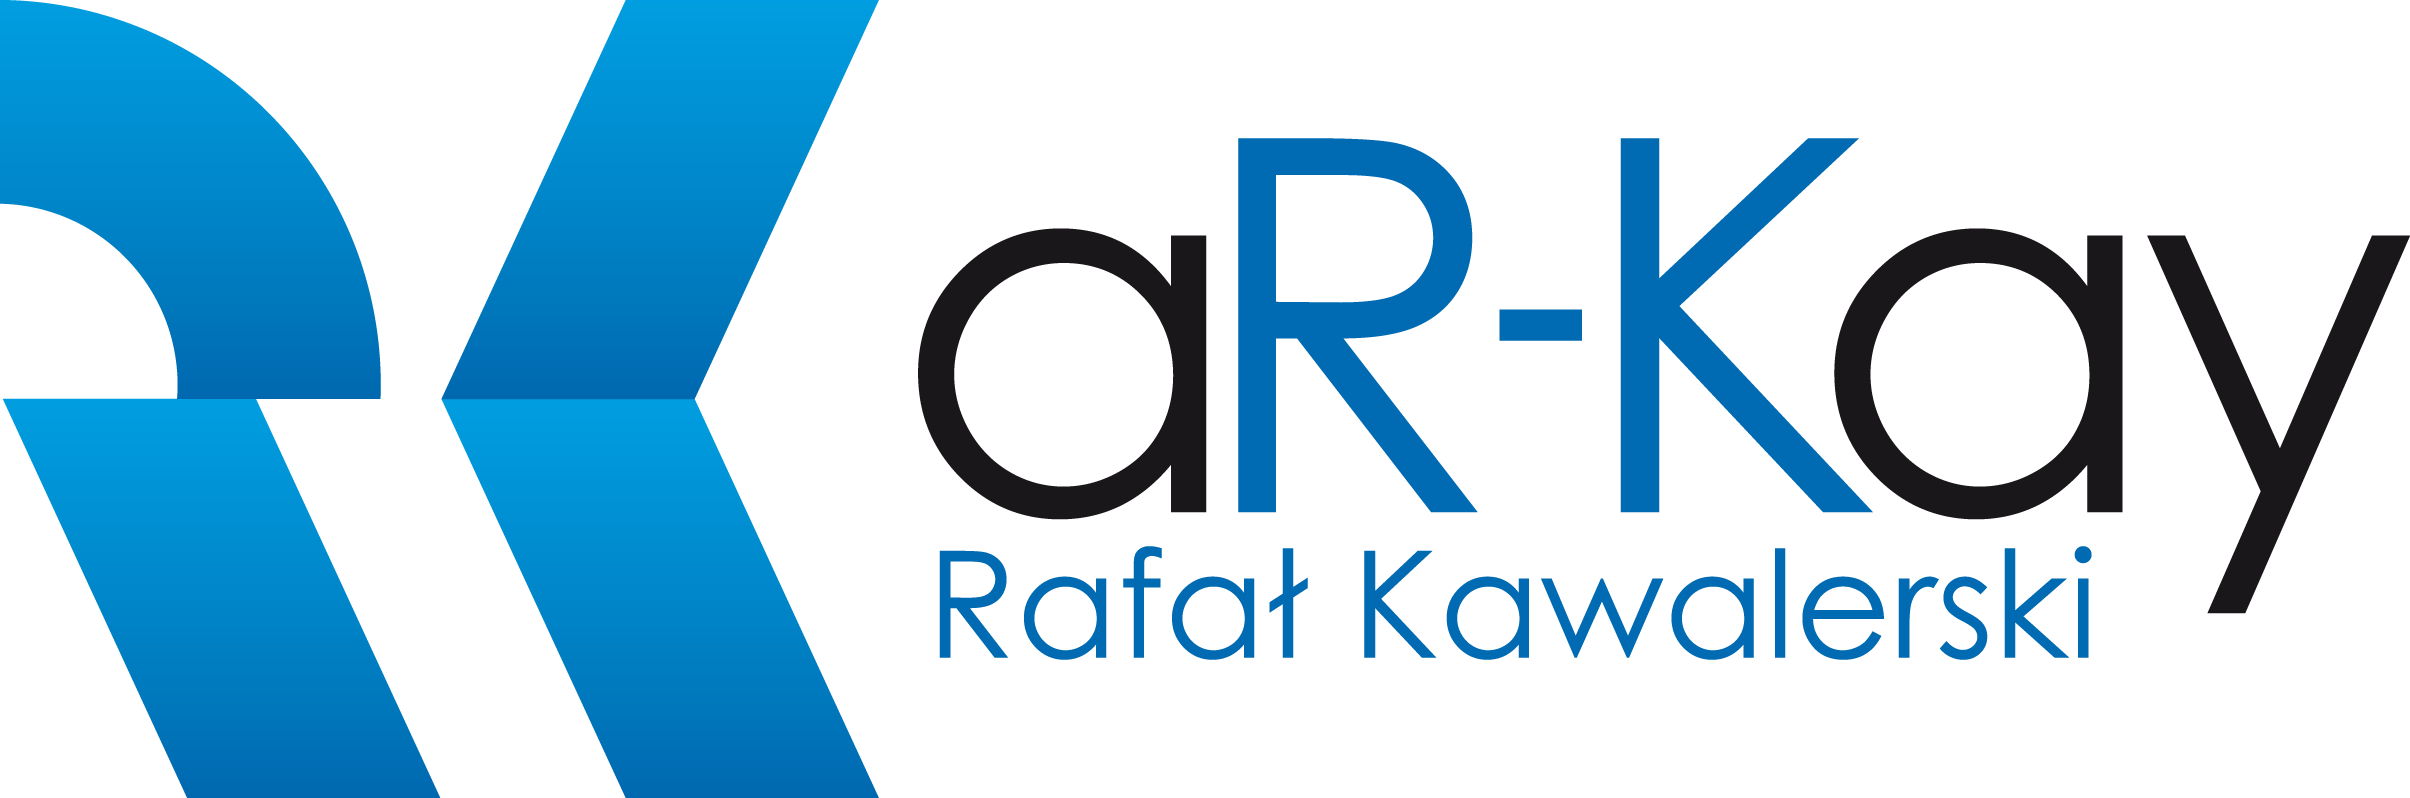 aR-Kay_logo